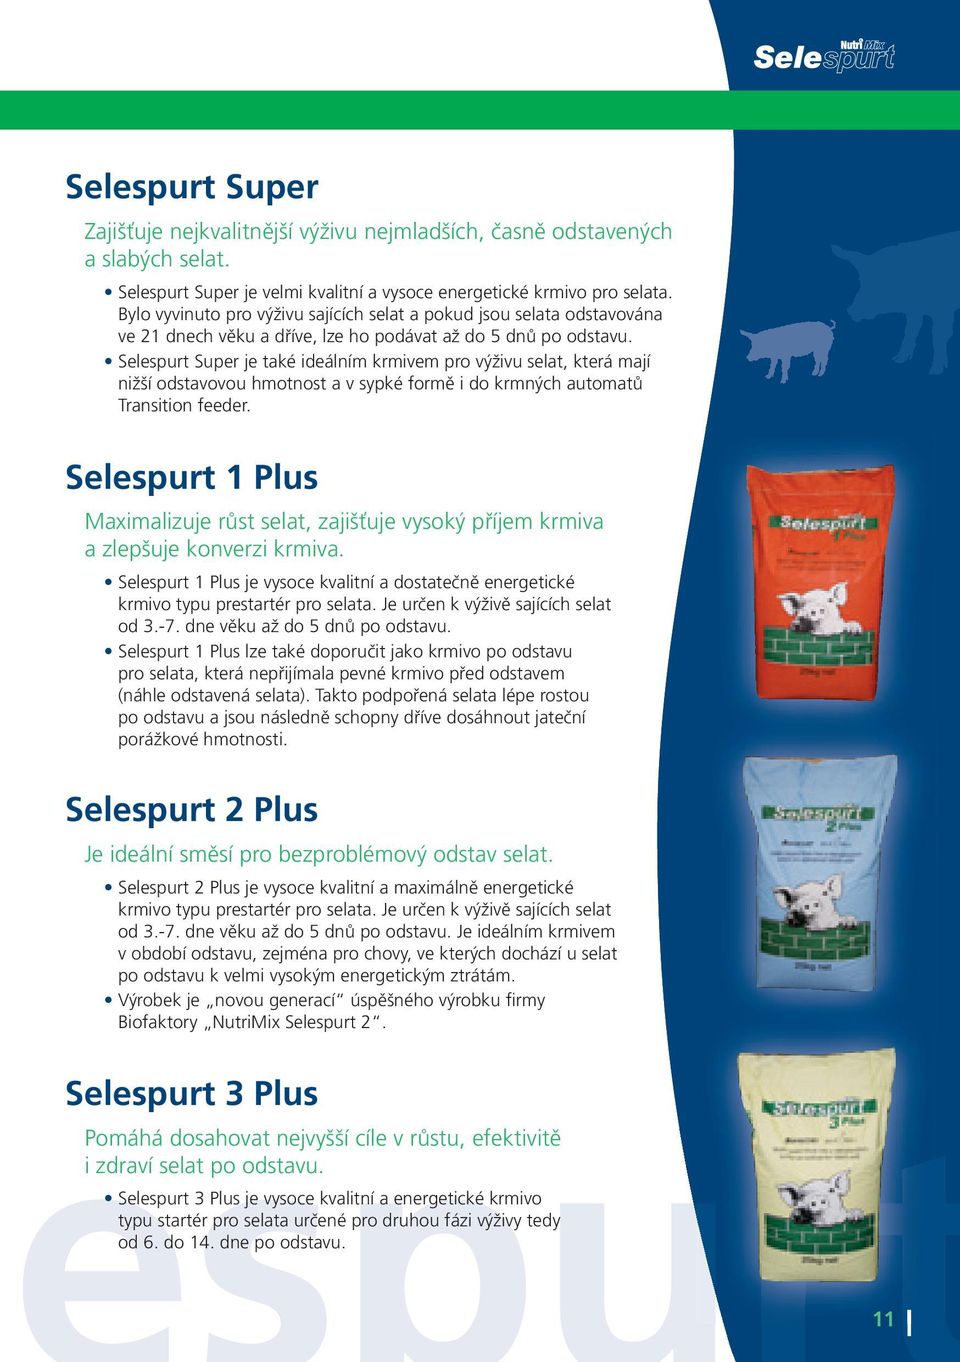 Selespurt Super je také ideálním krmivem pro výživu selat, která mají nižší odstavovou hmotnost a v sypké formě i do krmných automatů Transition feeder.